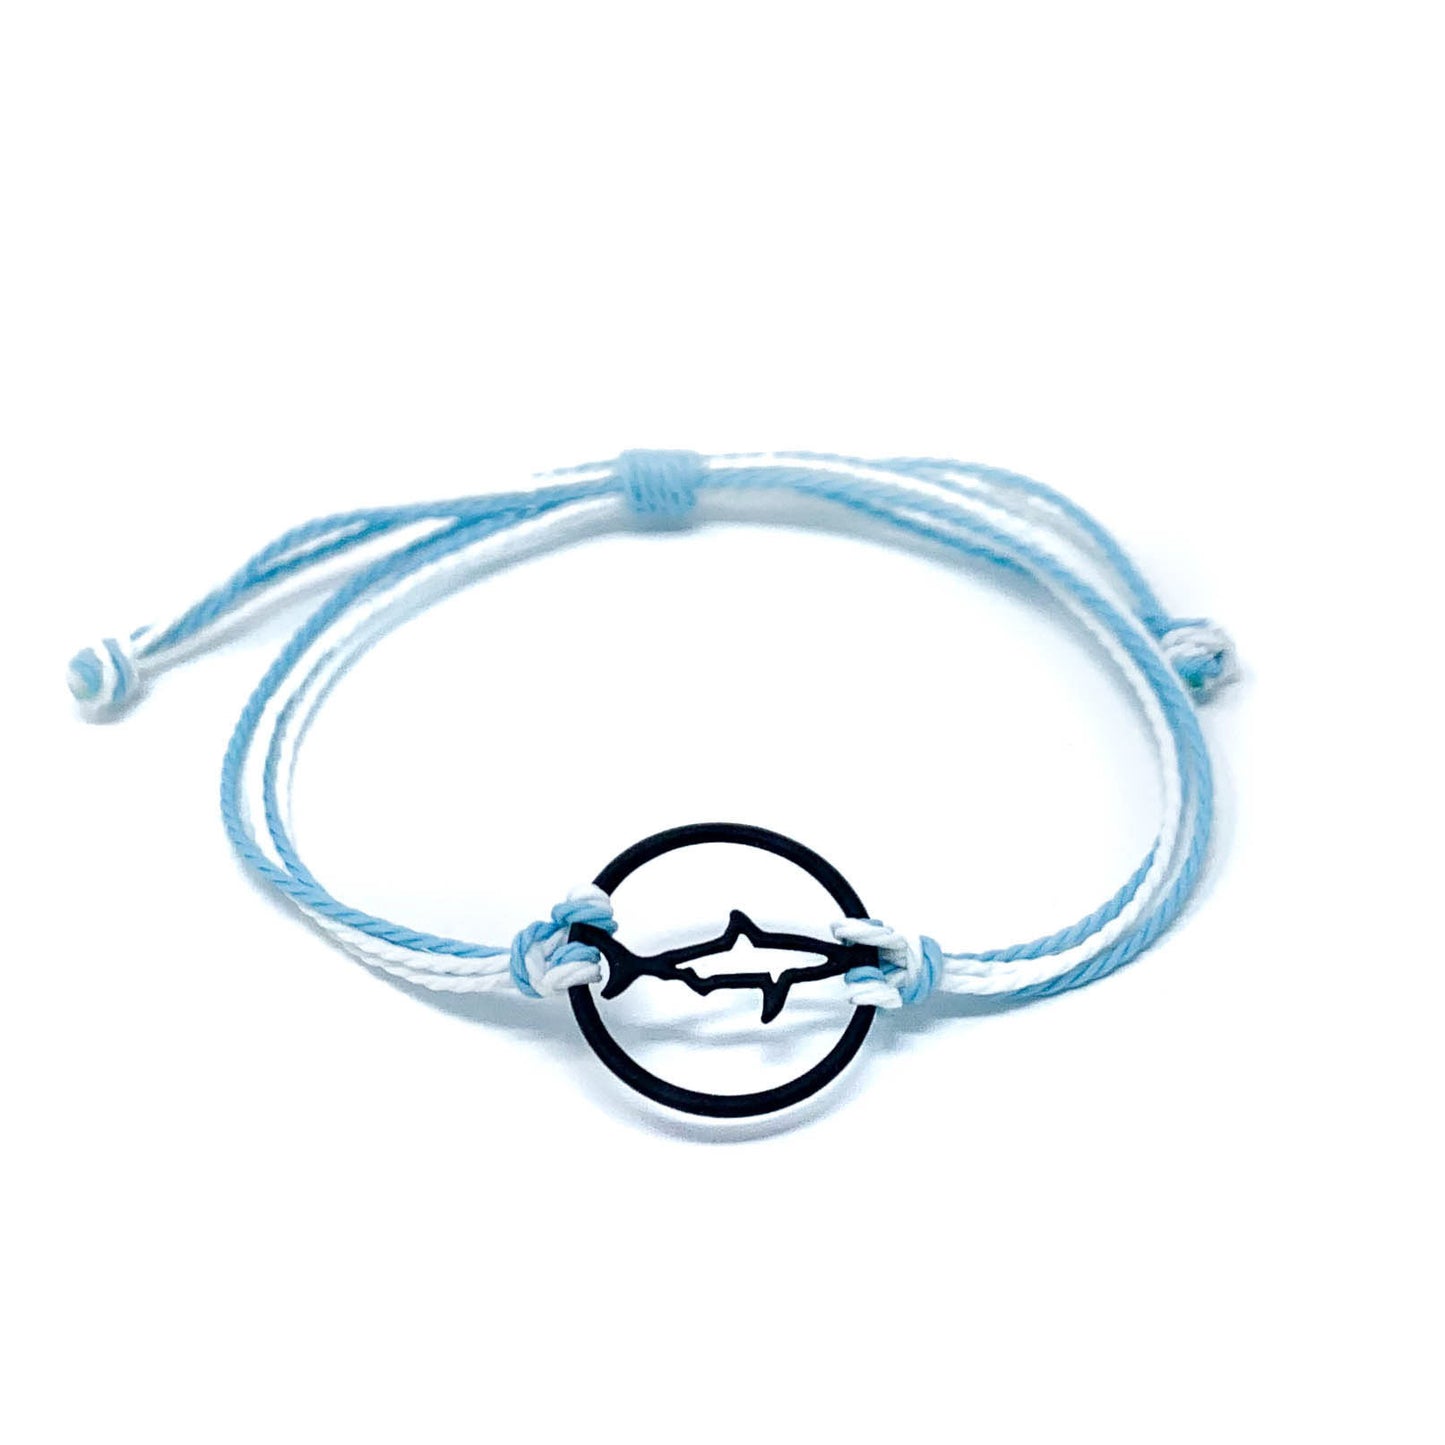 light blue black shark string silhouette bracelet sky-blue teal